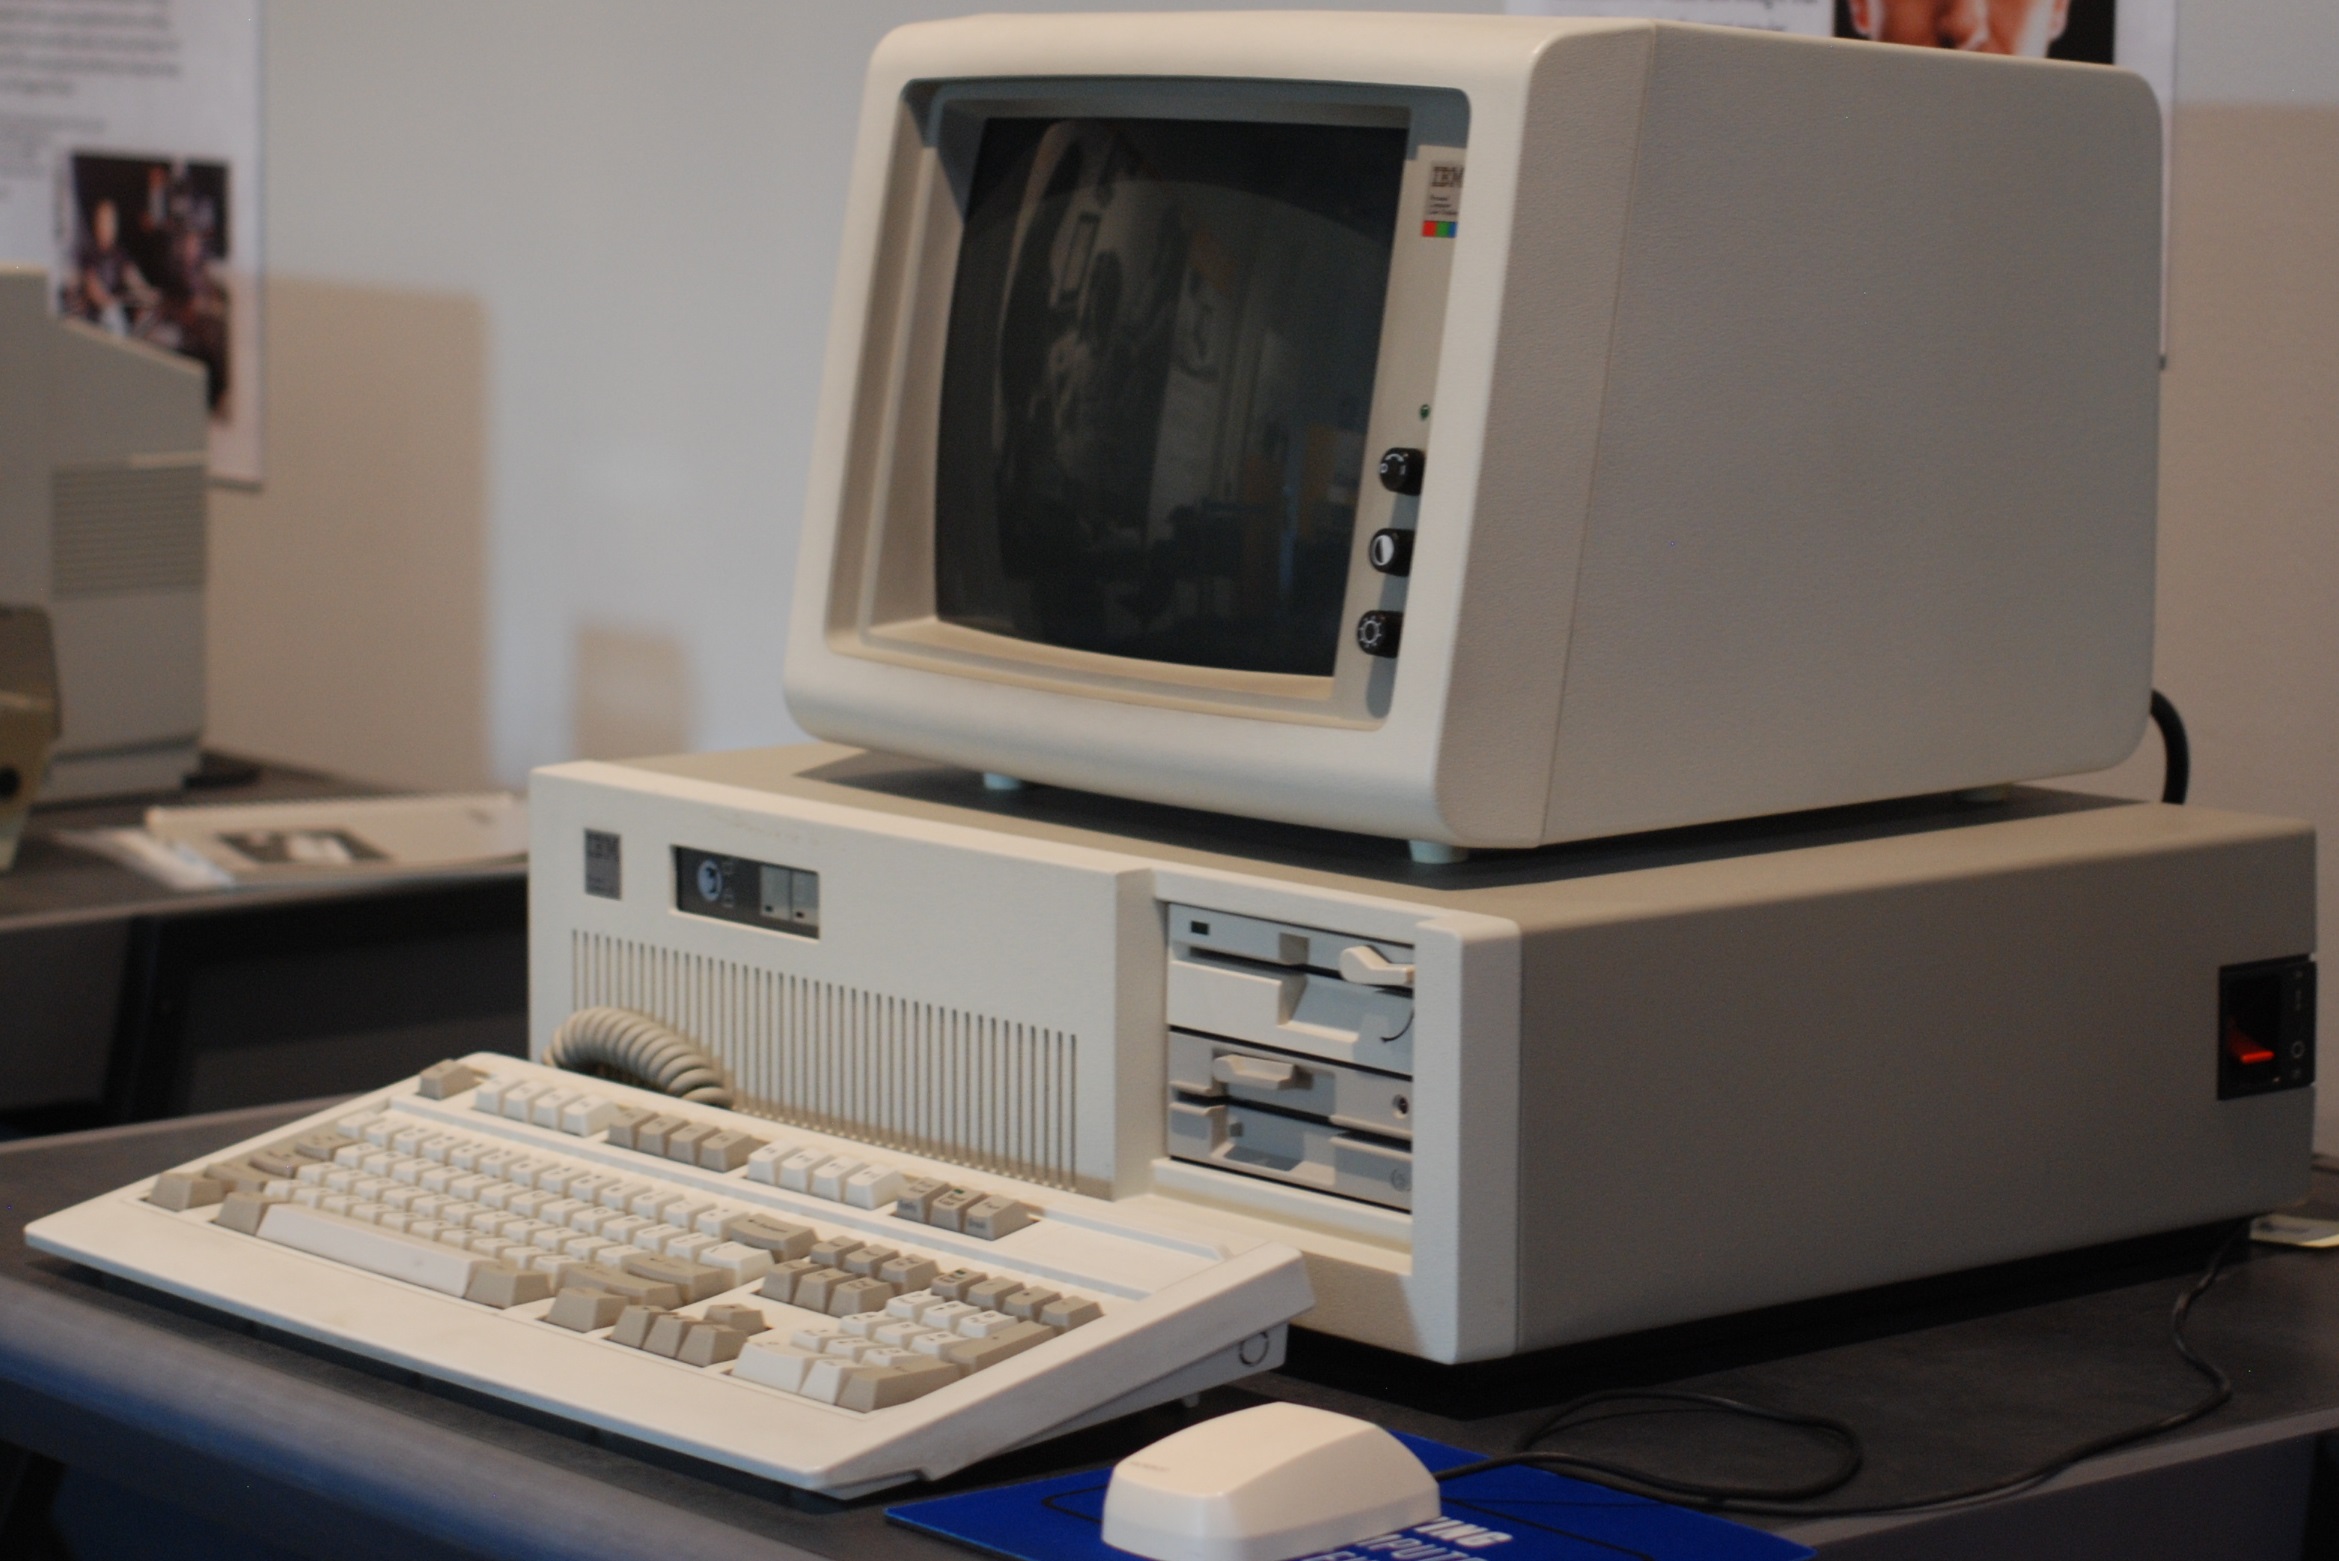 IBM PC AT computer